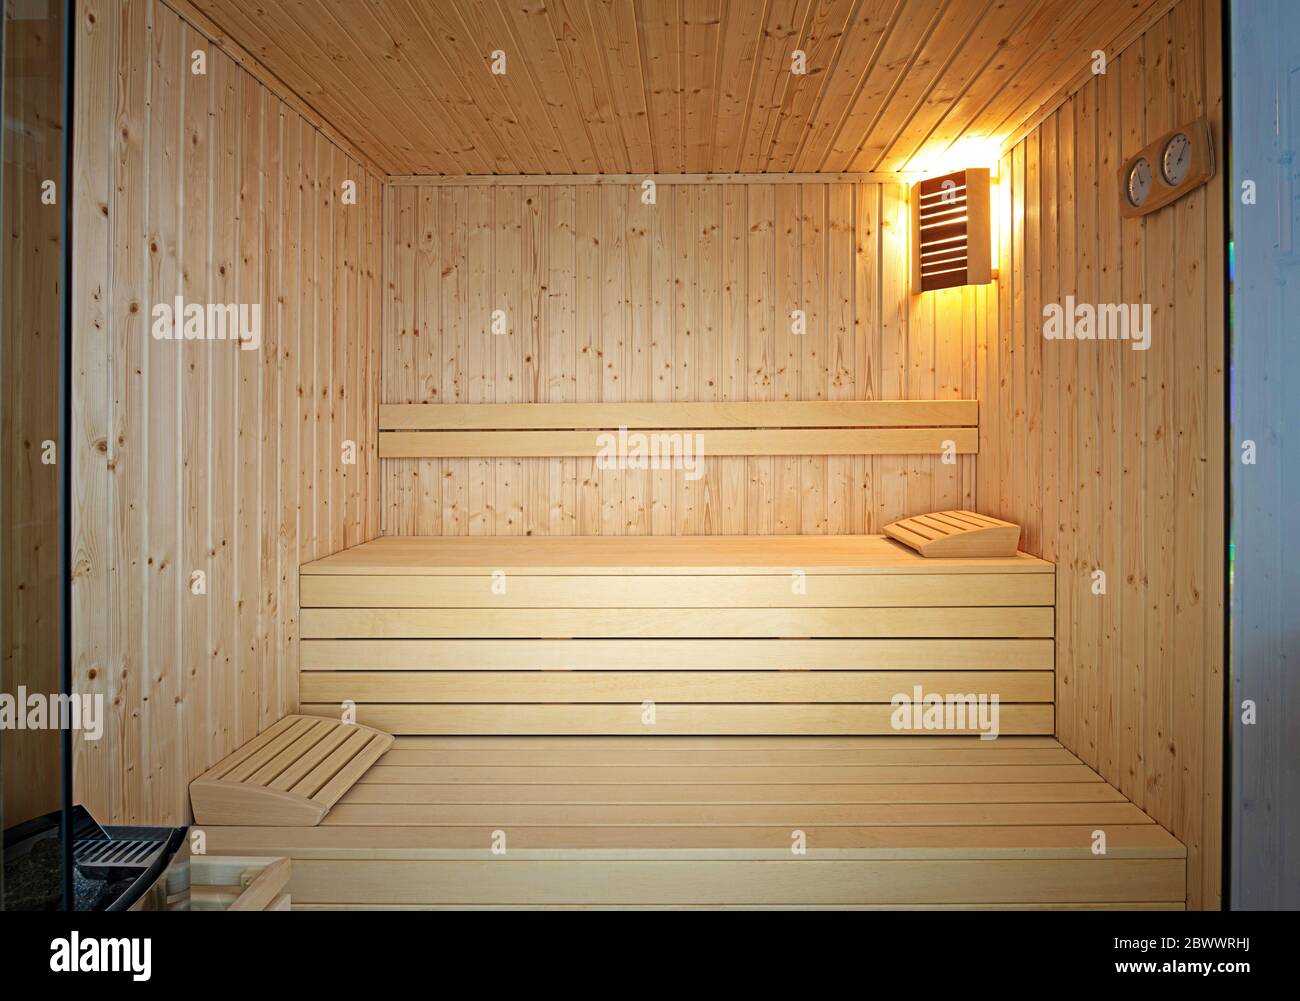 Vorderansicht der traditionellen finnischen Sauna. Leere Innenseite der hölzernen Spa-Kabine mit heißem Trockendampf Stockfoto